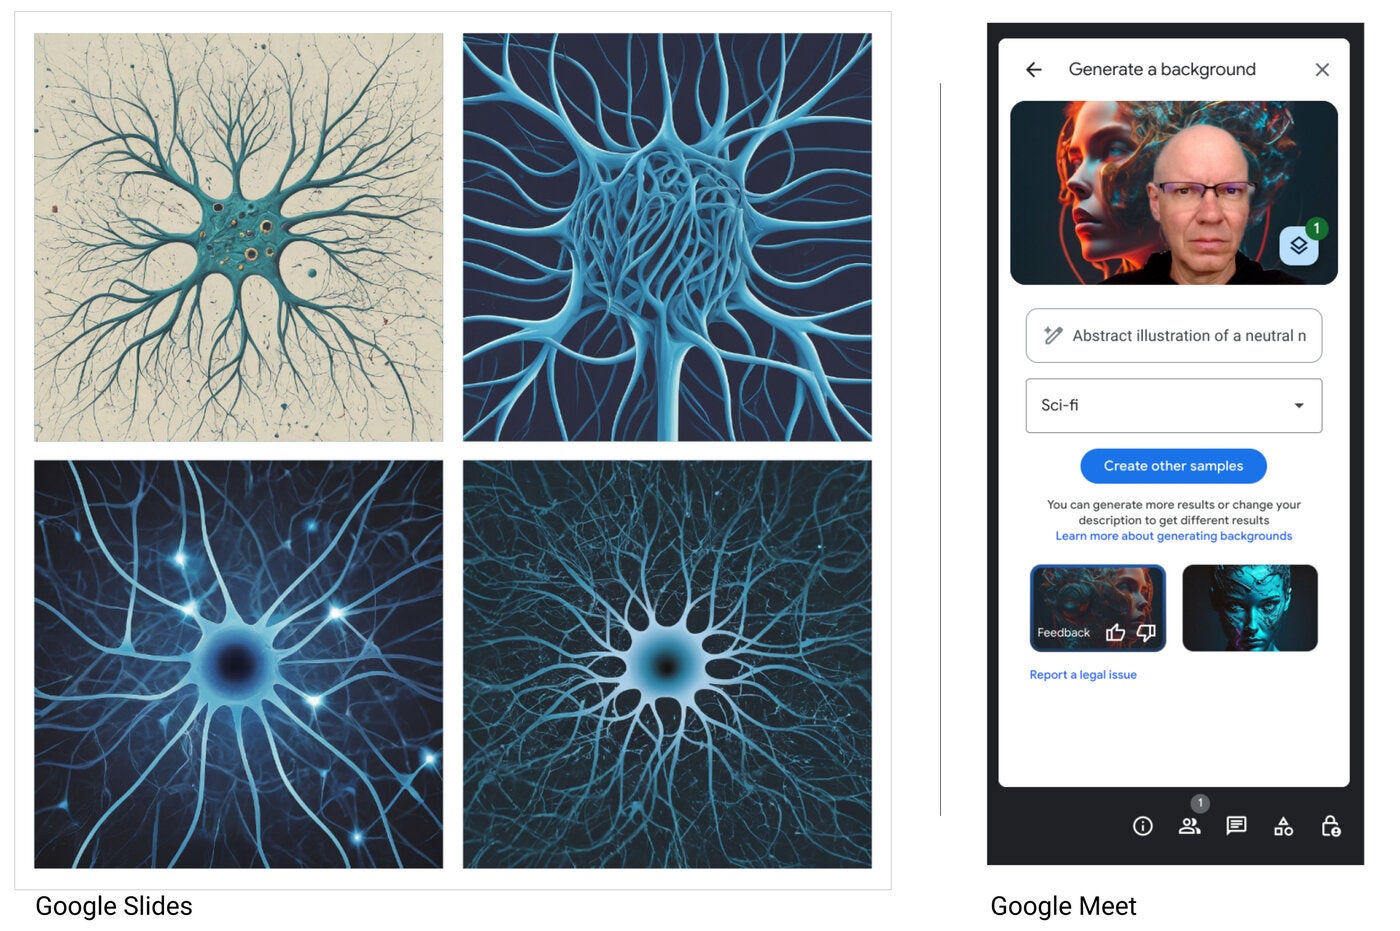 Imágenes de ilustraciones abstractas generadas por Gemini en Google Slides (izquierda) y Google Meet (derecha).